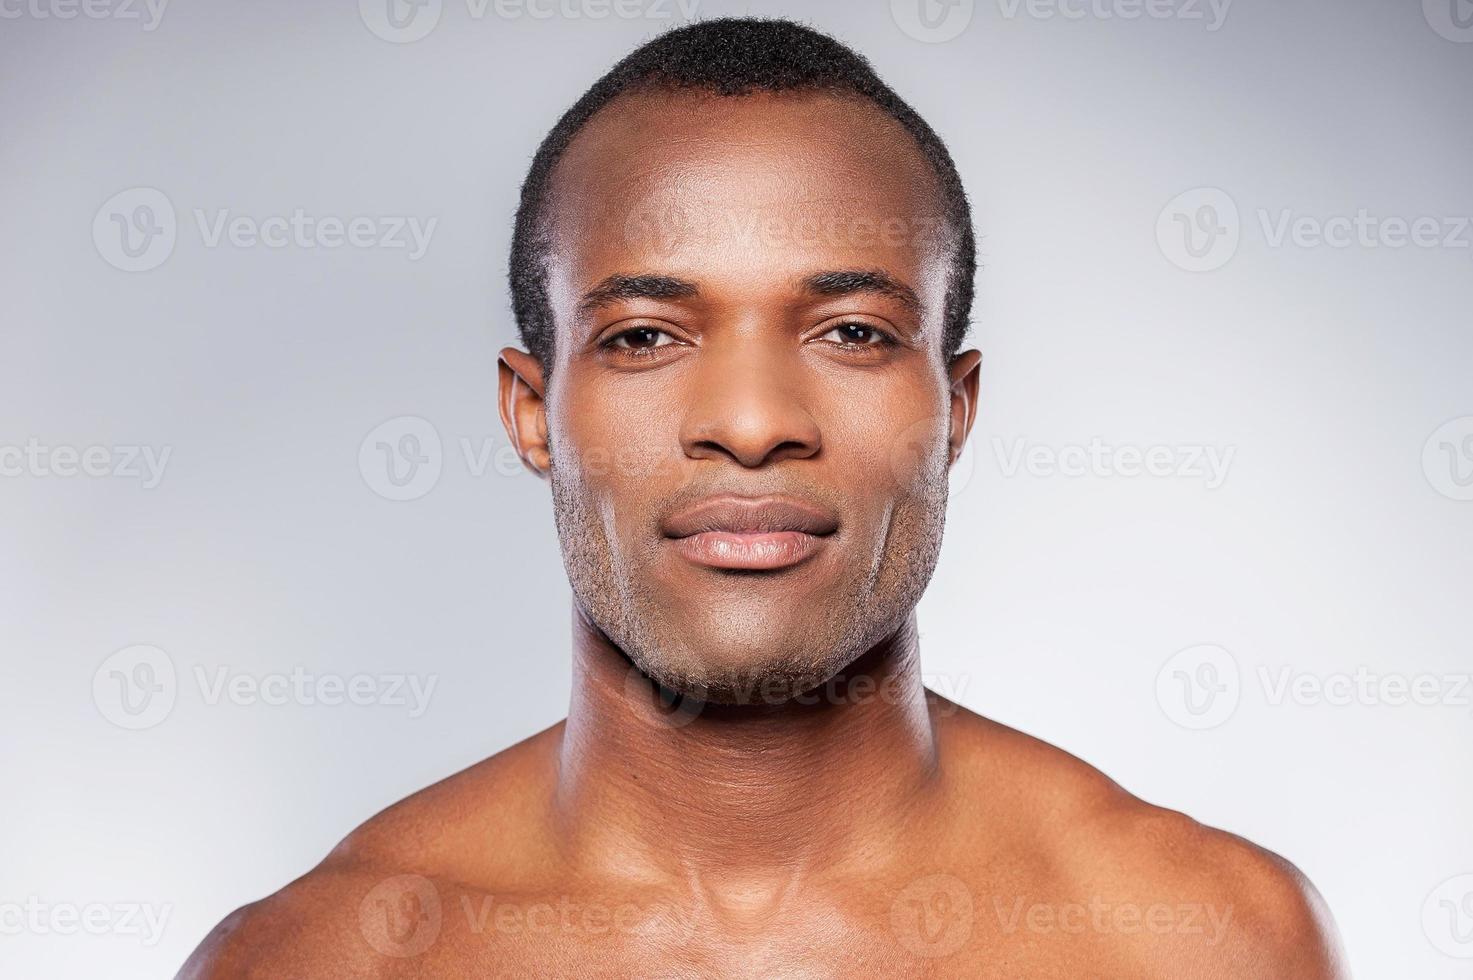 retrato de la masculinidad. retrato de un joven africano sin camisa mirando a la cámara mientras se enfrenta a un fondo gris foto